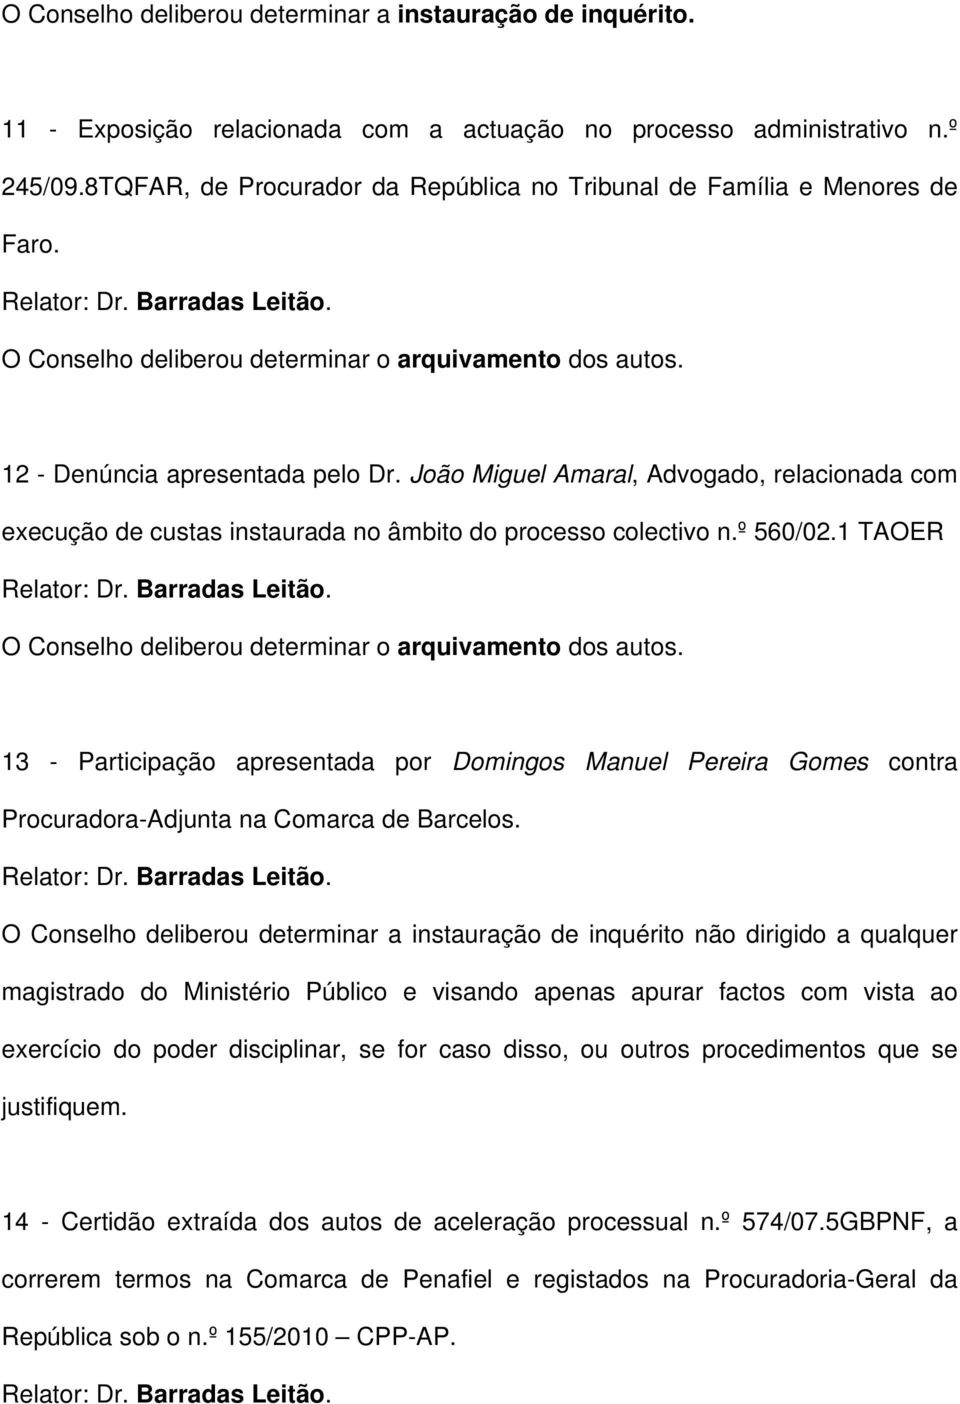 João Miguel Amaral, Advogado, relacionada com execução de custas instaurada no âmbito do processo colectivo n.º 560/02.